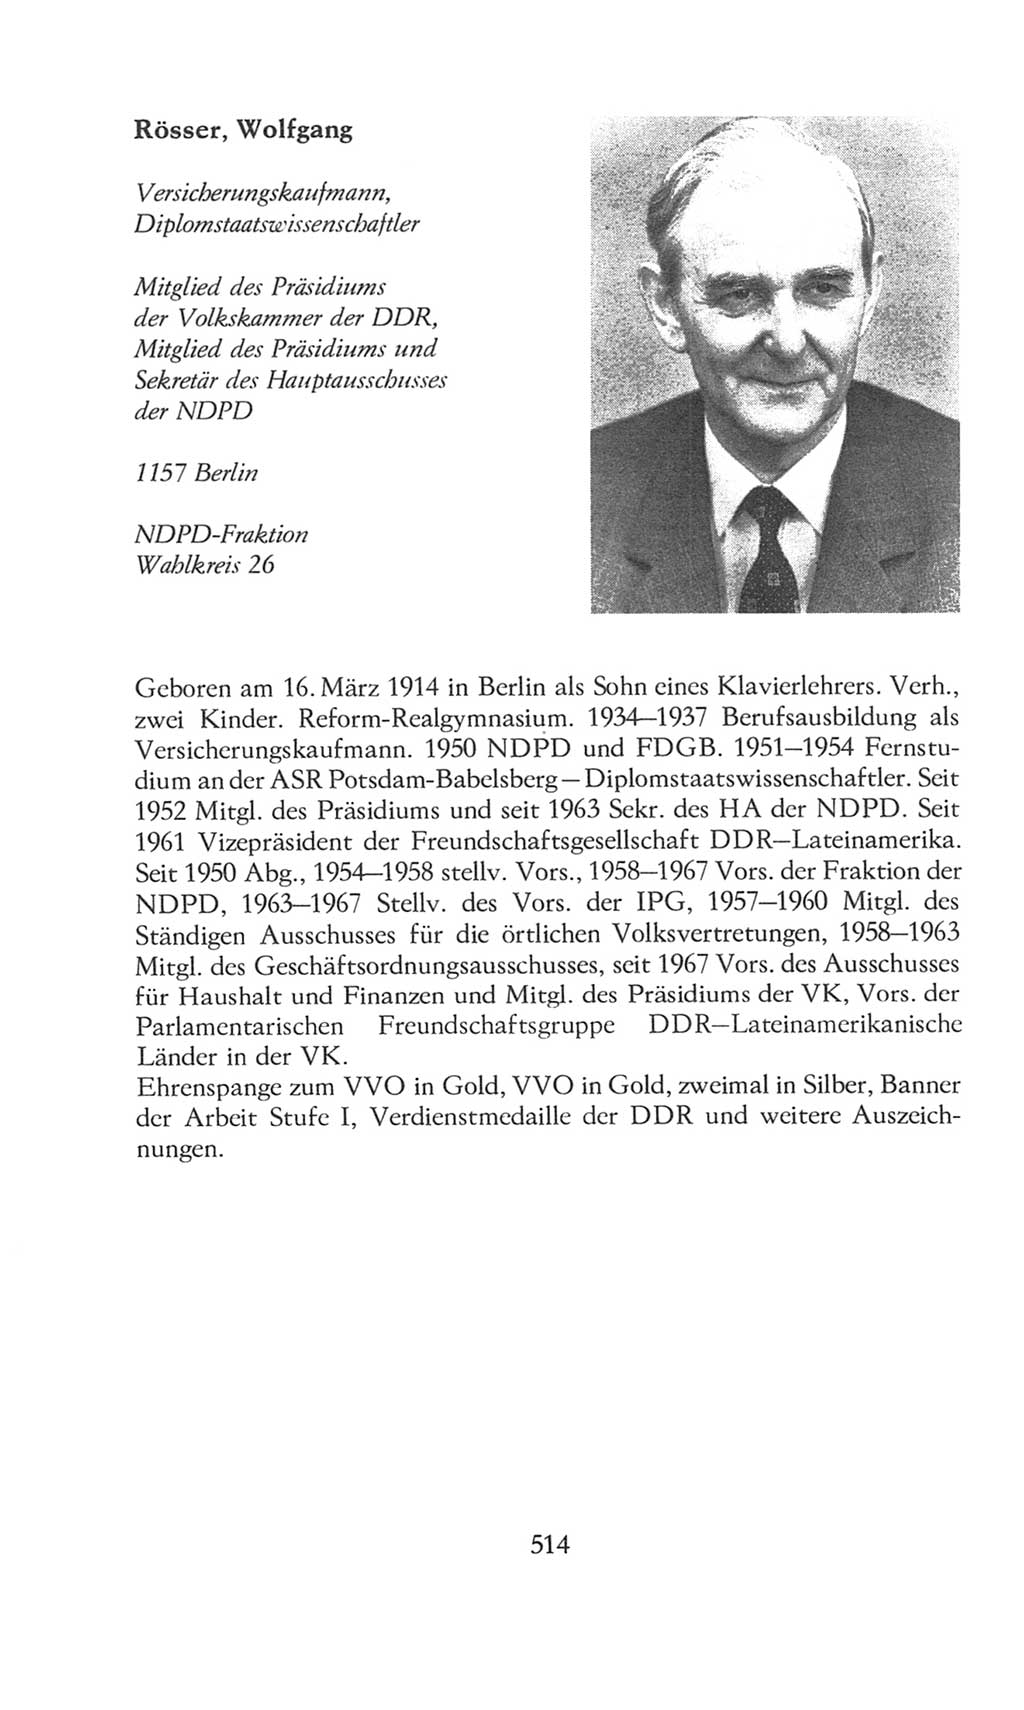 Volkskammer (VK) der Deutschen Demokratischen Republik (DDR), 8. Wahlperiode 1981-1986, Seite 514 (VK. DDR 8. WP. 1981-1986, S. 514)